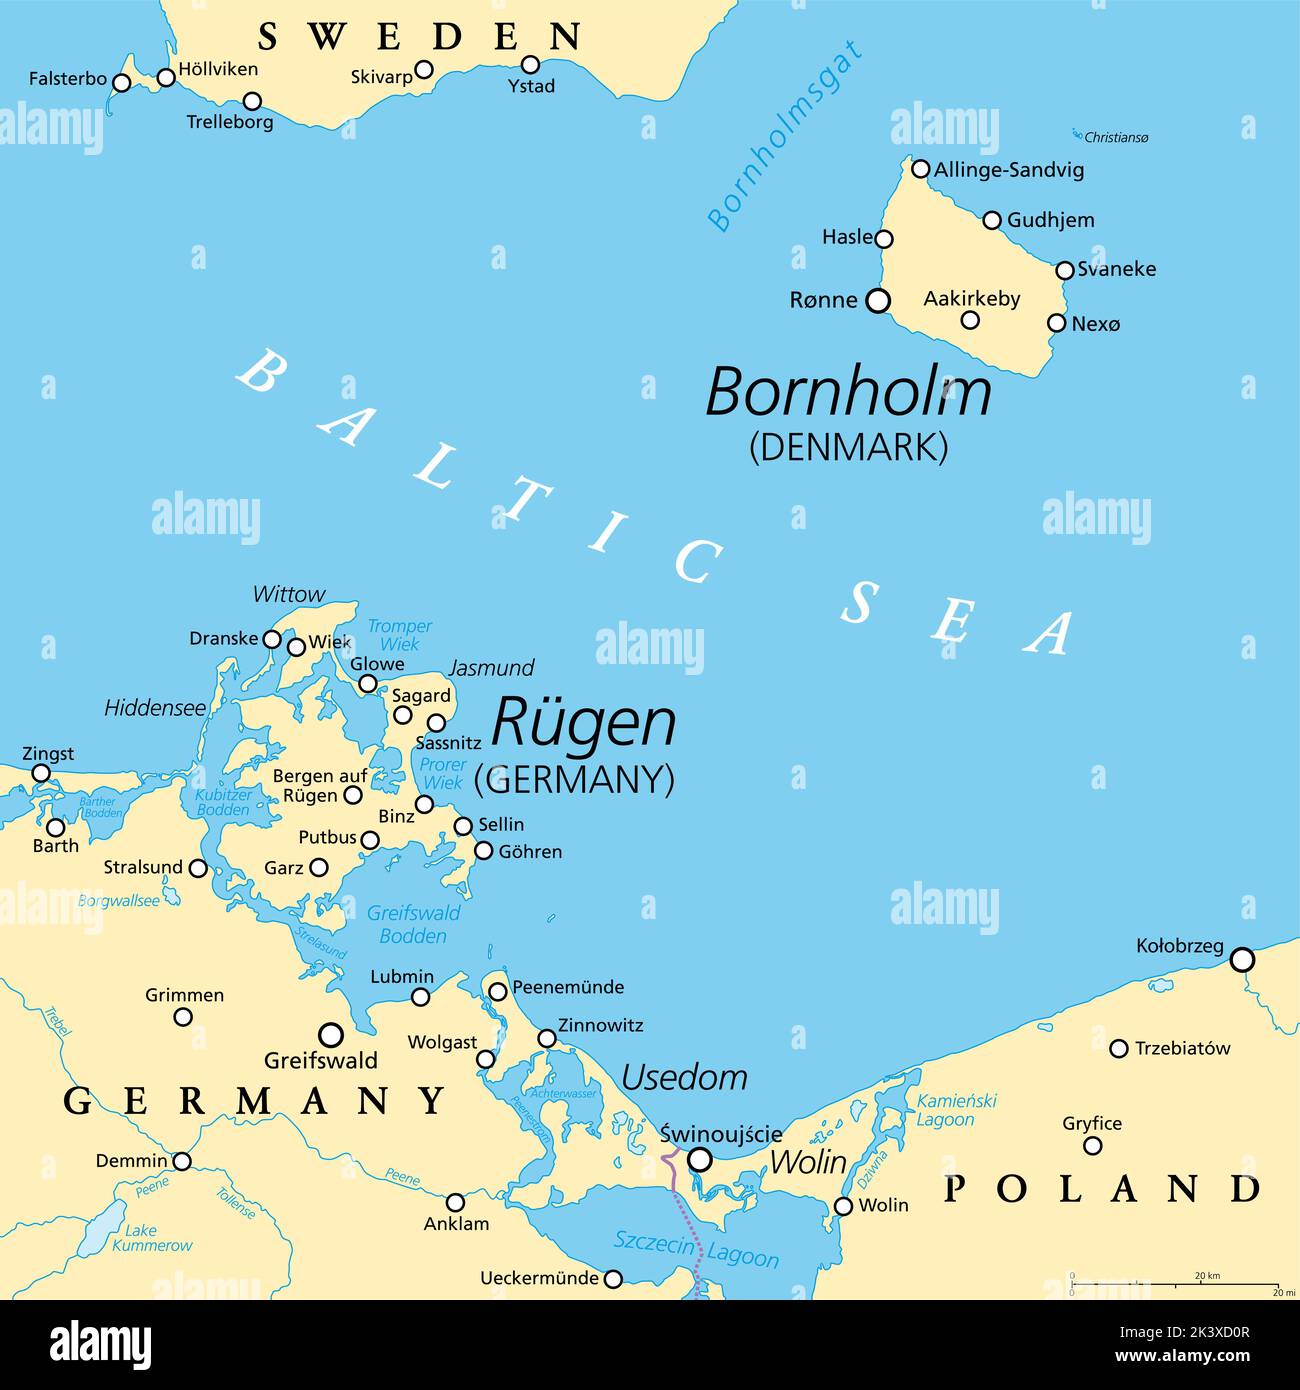 Mappa politica di Bornholm, un'isola danese, e Ruegen, la più grande isola della Germania. Entrambe le isole si trovano nel Mar Baltico meridionale. Foto Stock